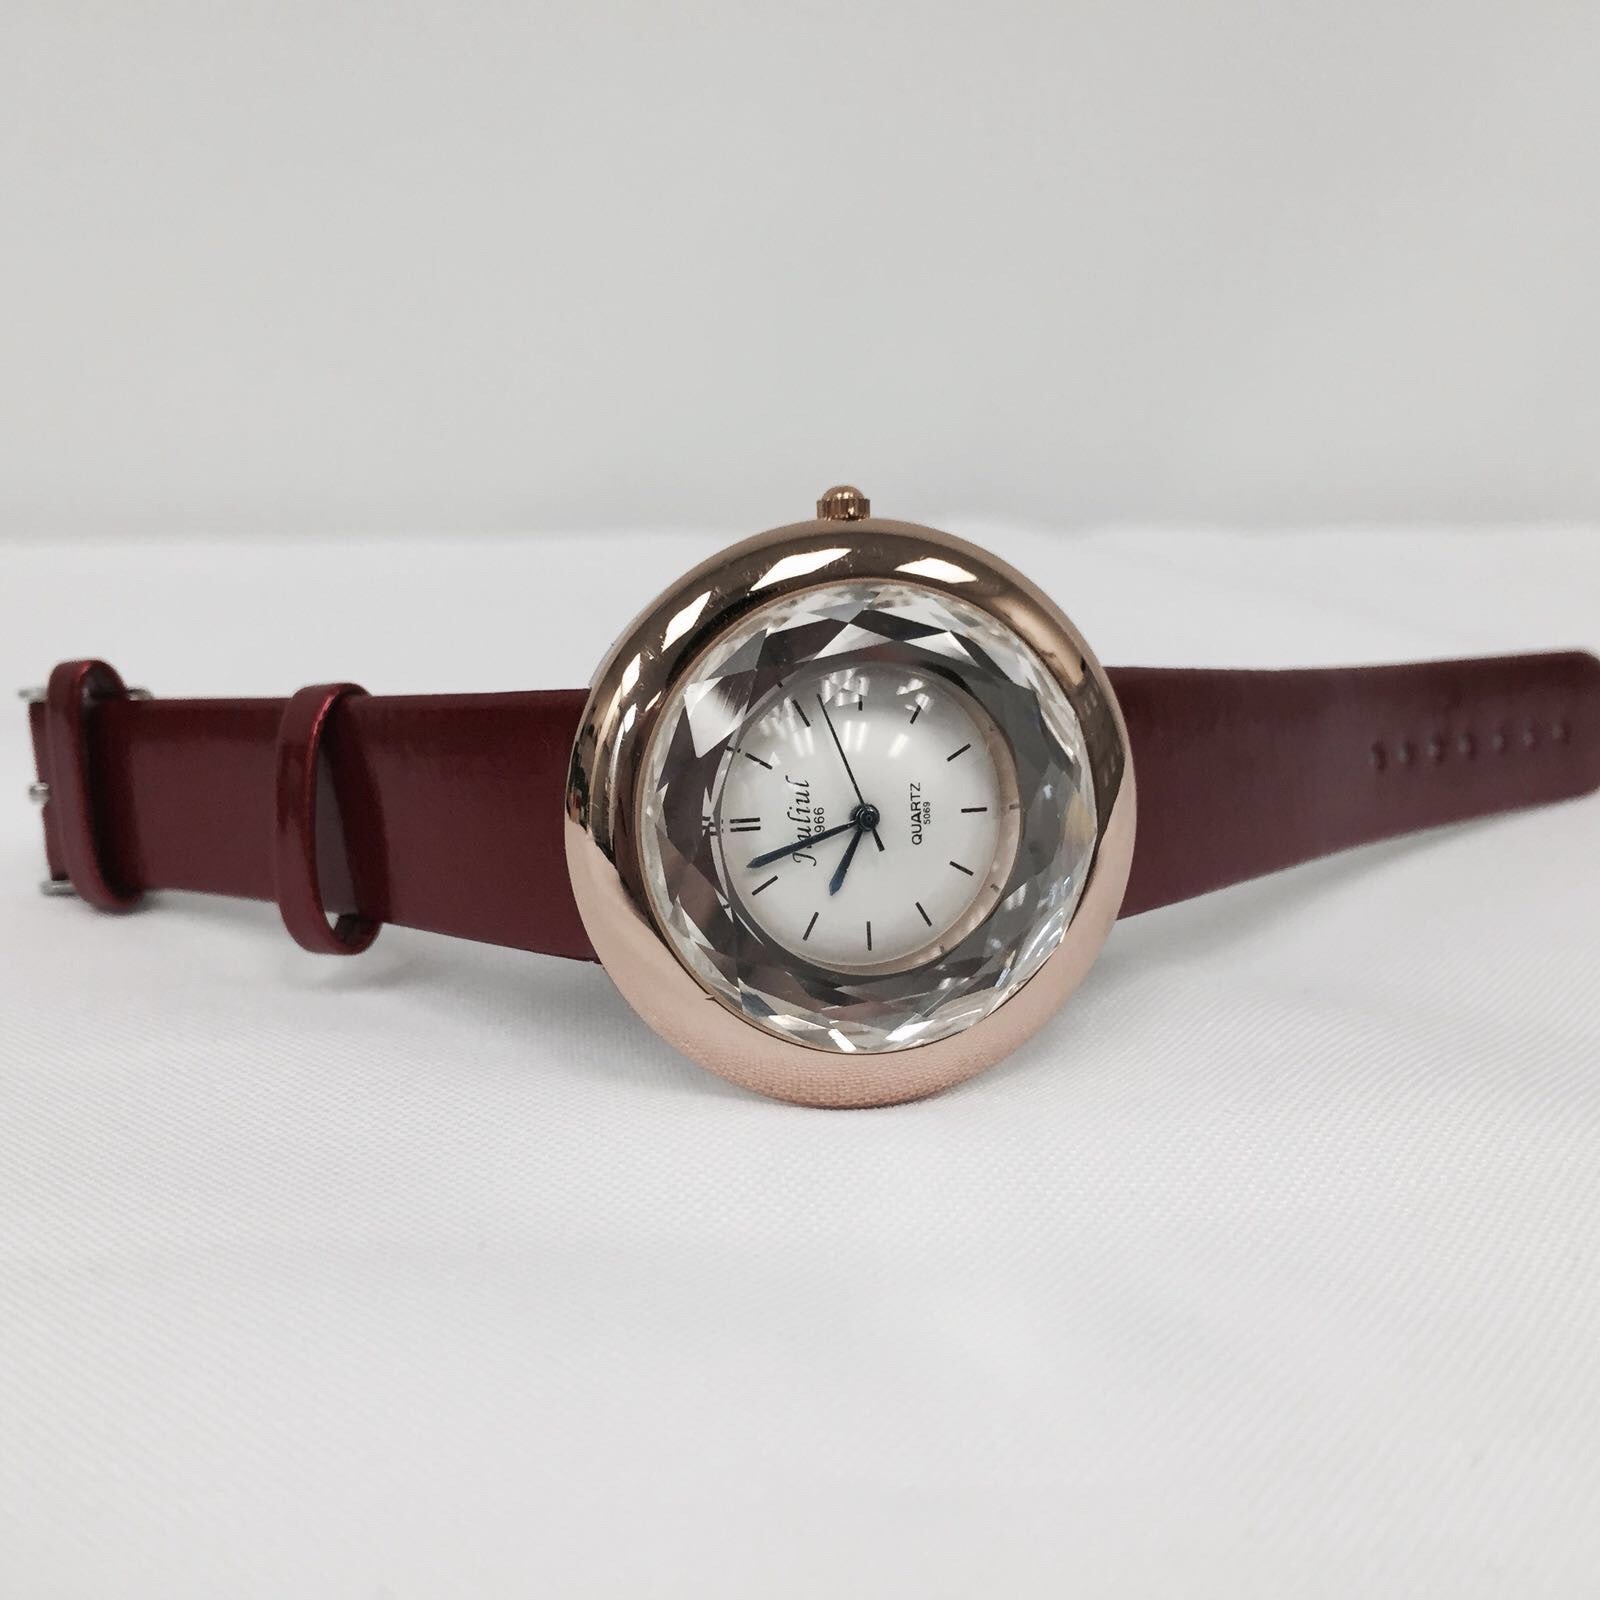 Jiuliu Copper Watch with Red Strap